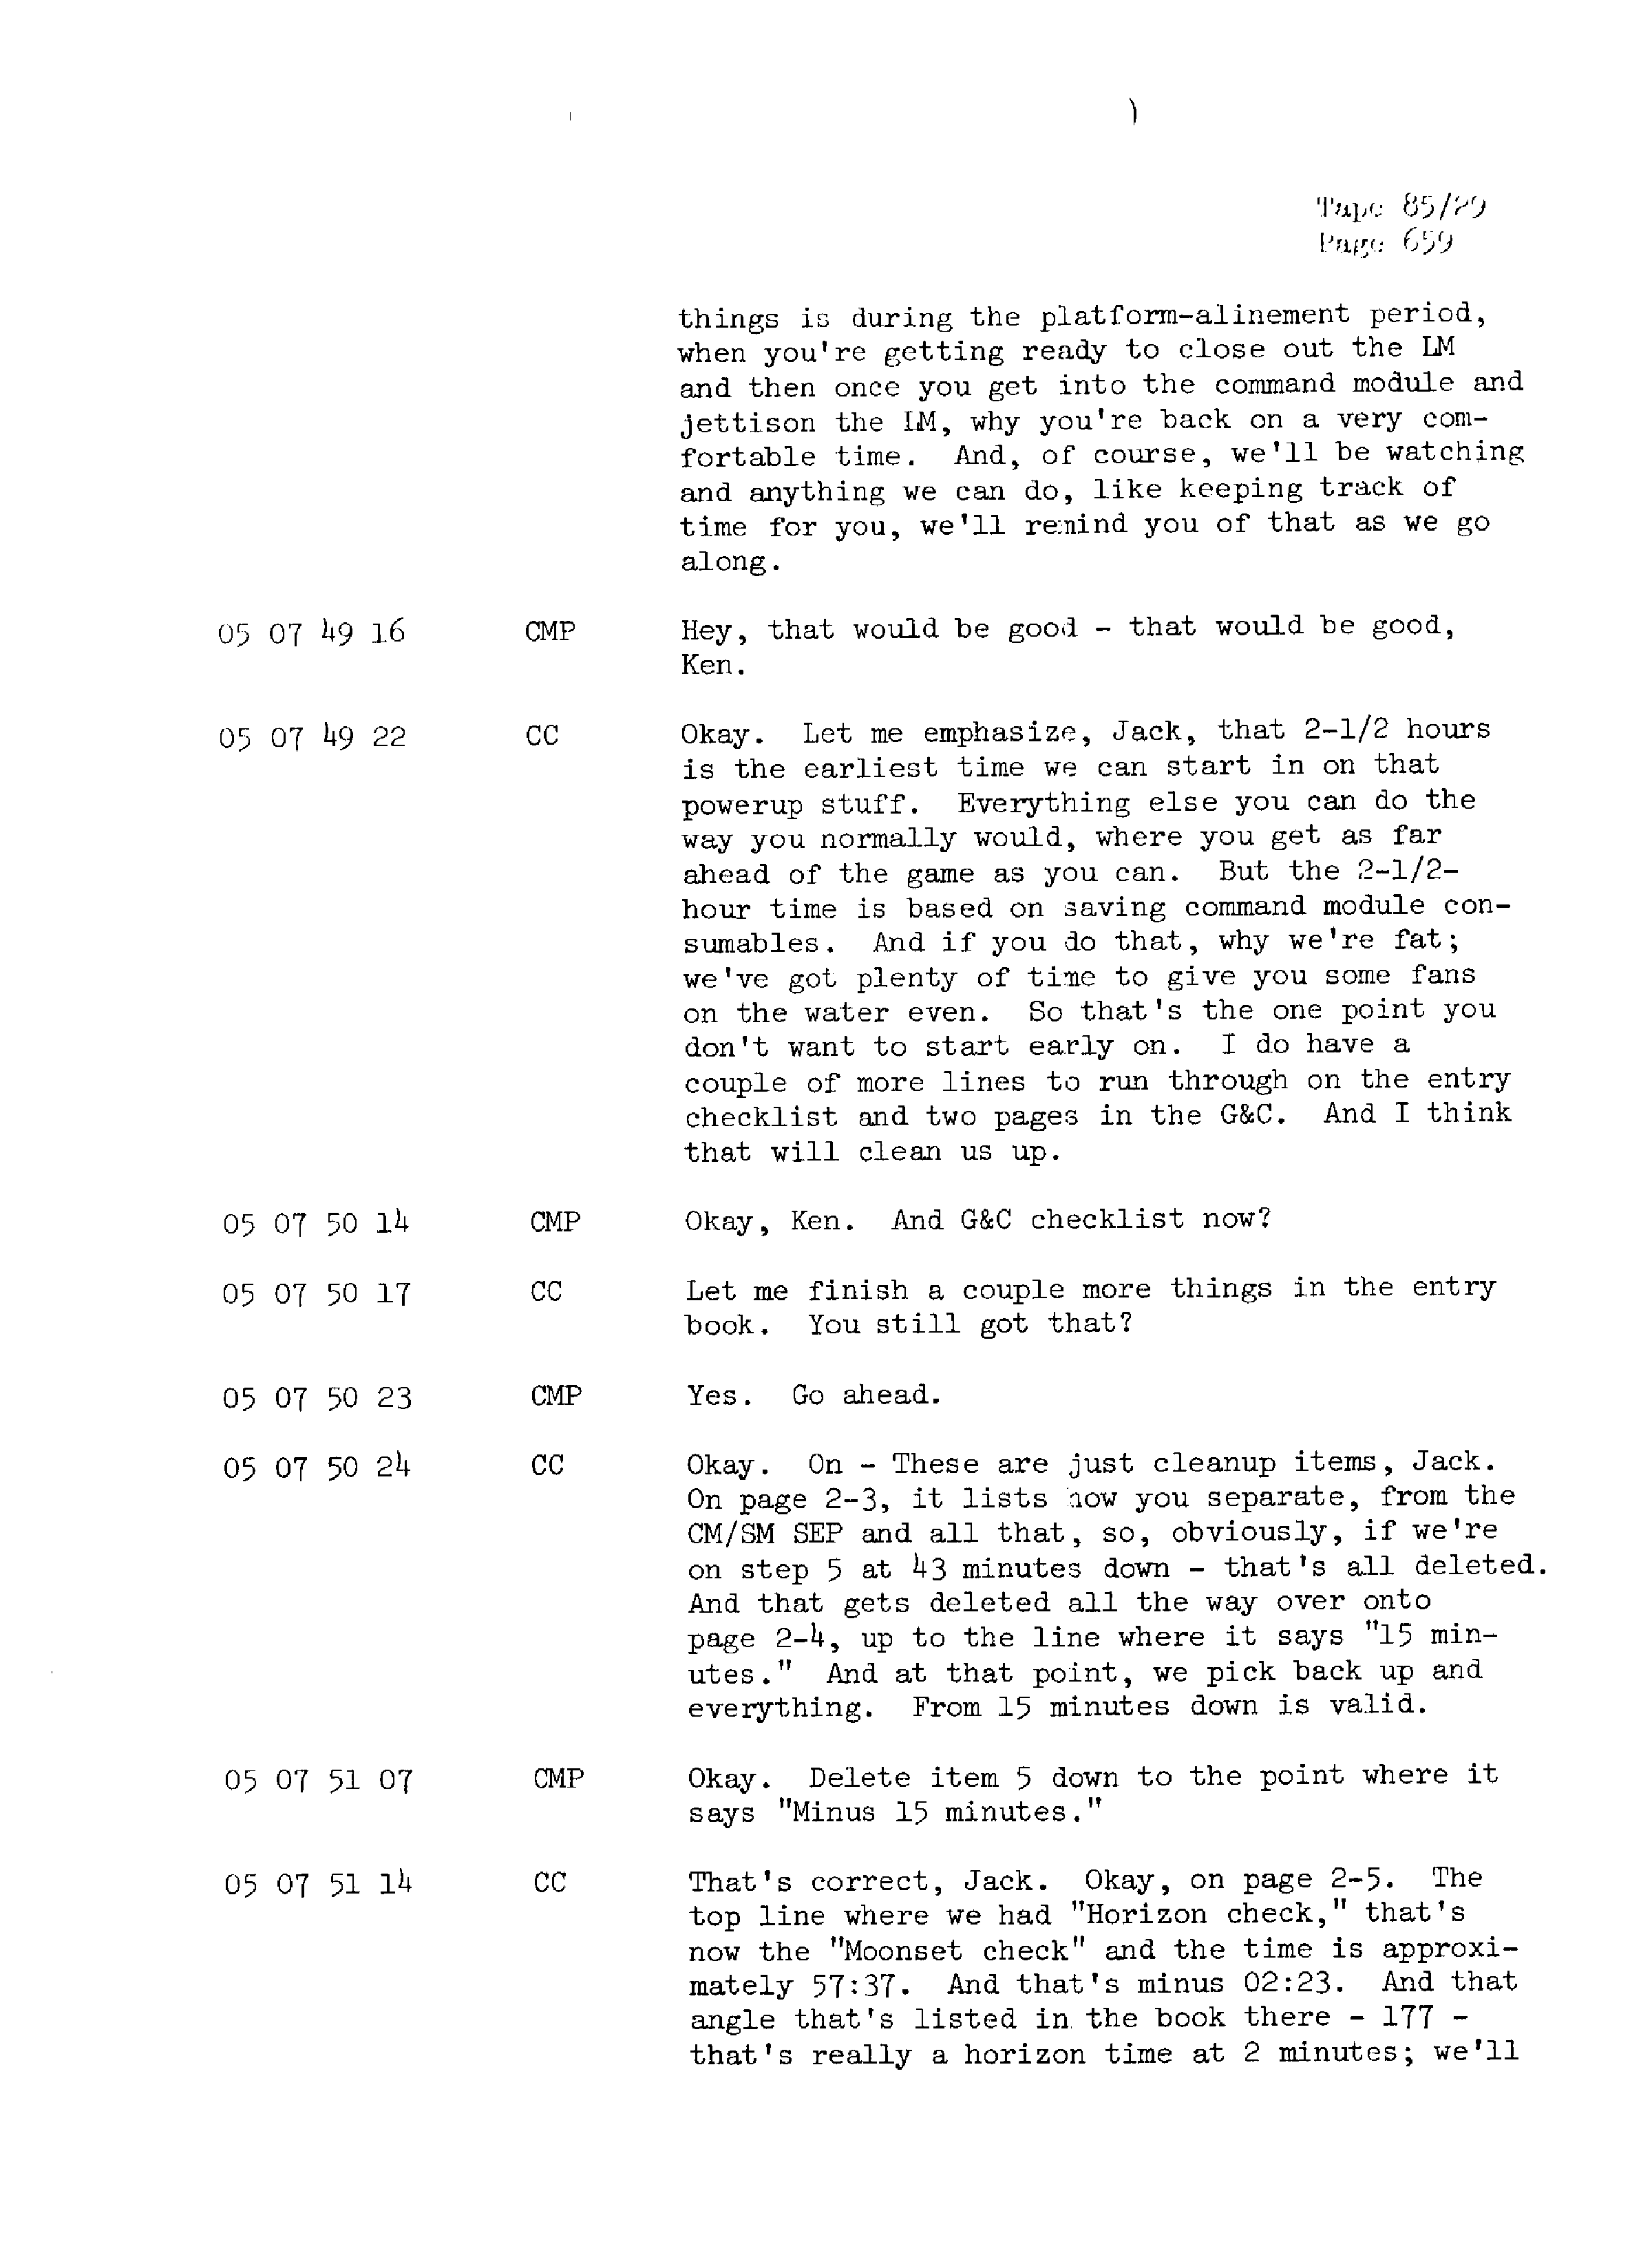 Page 666 of Apollo 13’s original transcript